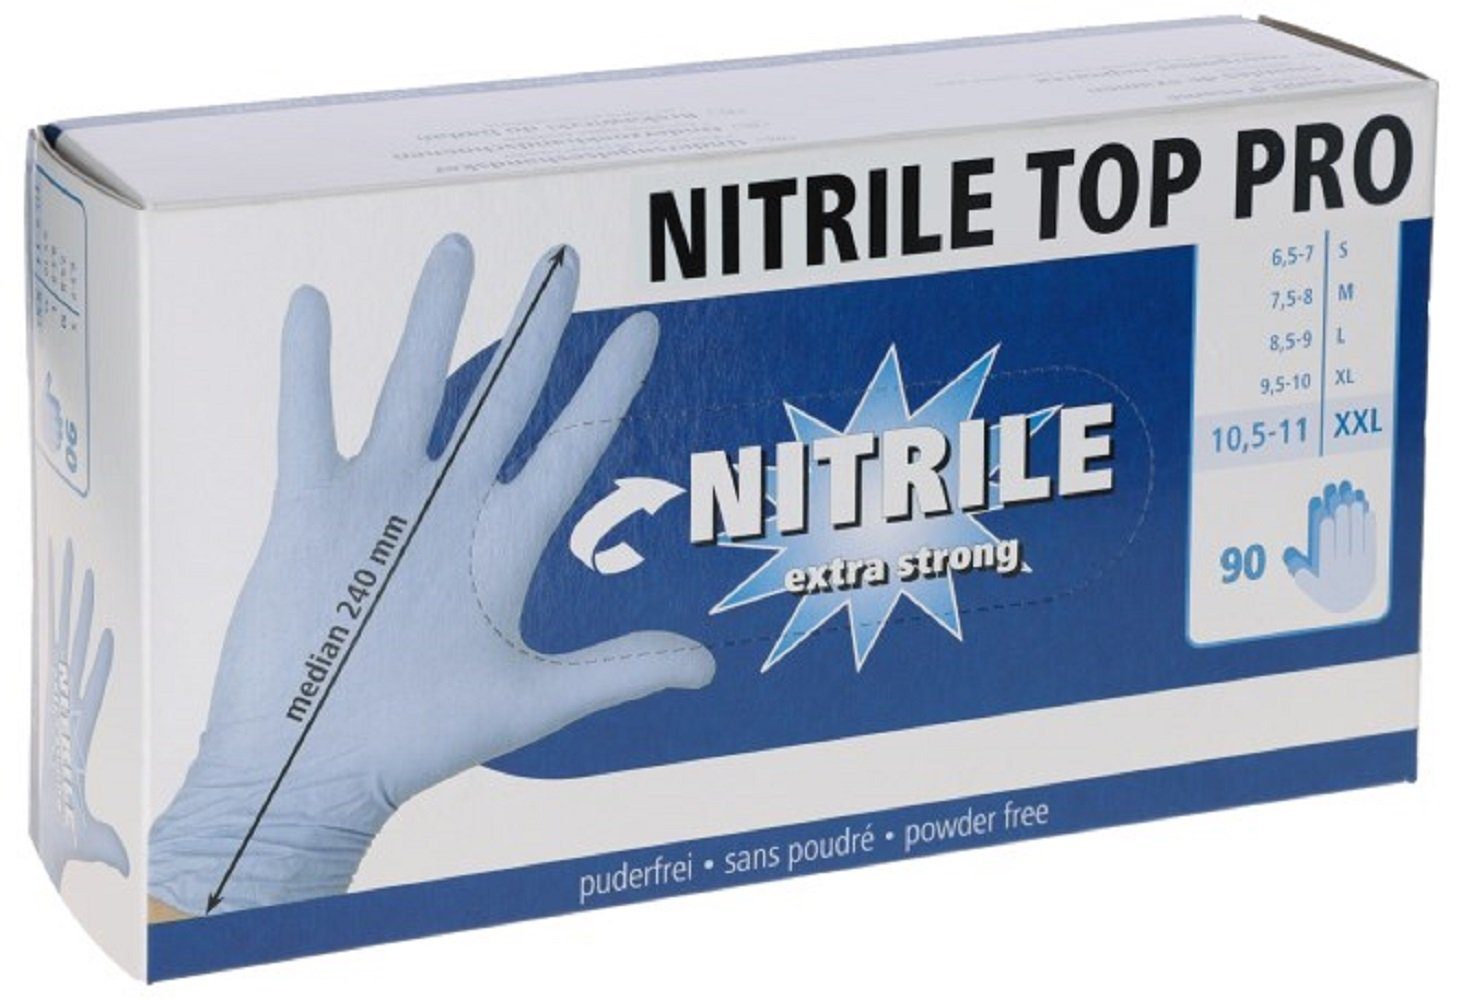 Größe 9,5-10 Top Einweghandschuhe Einmalhandschuh XL, 153073 / Kerbl Pro, Nitril blau,